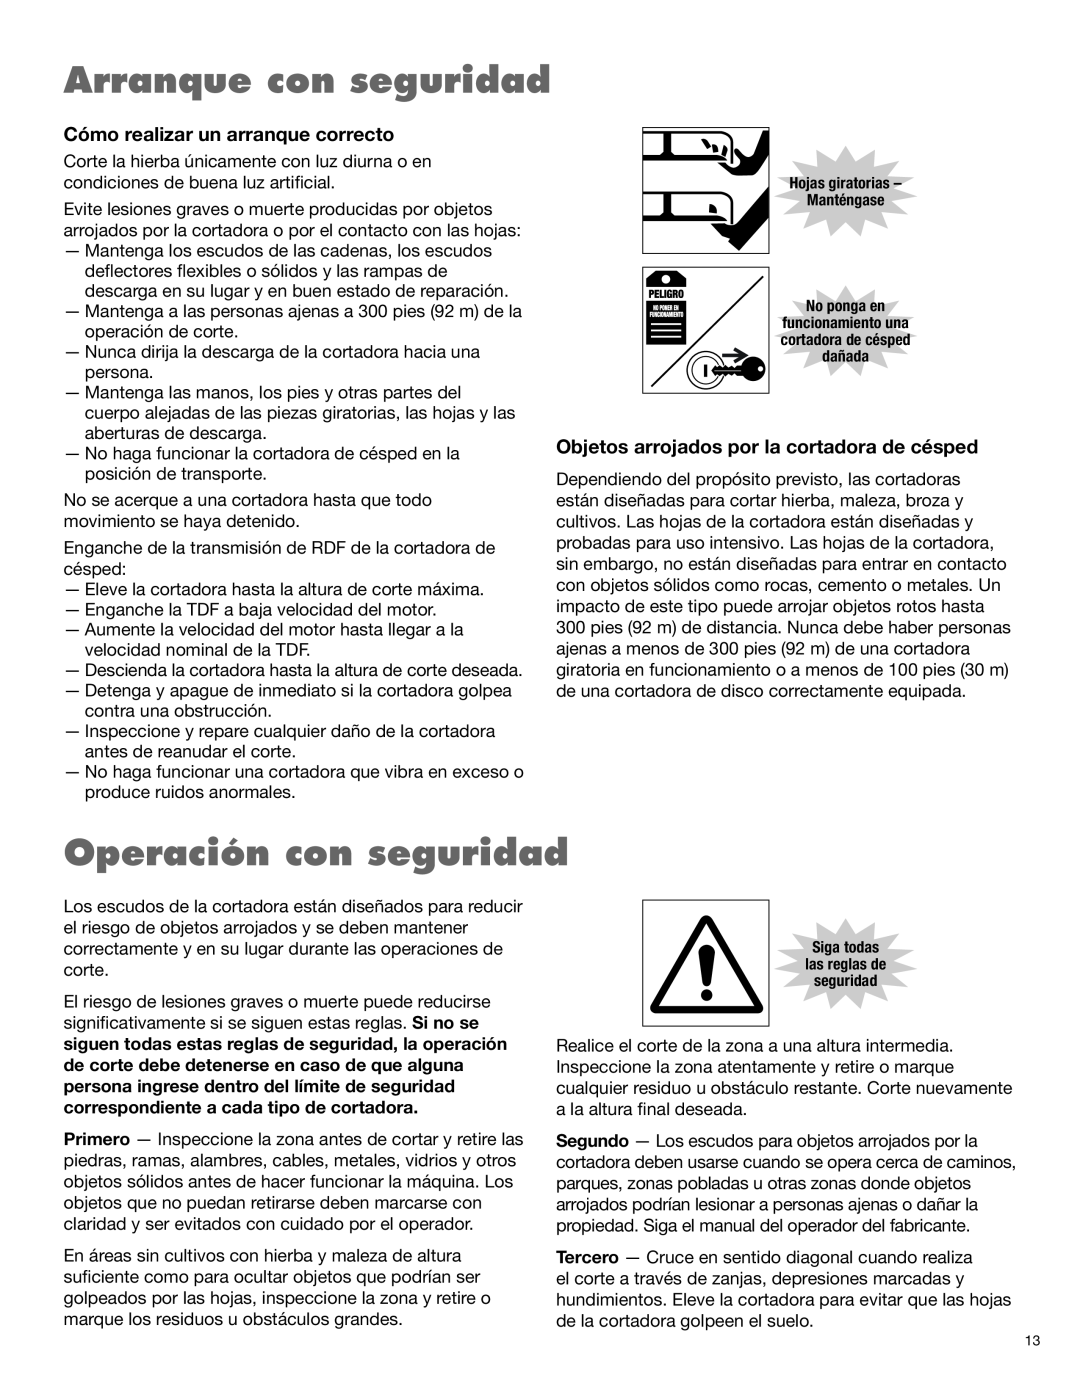 Alamo 1900 manual Arranque con seguridad, Operación con seguridad, Cómo realizar un arranque correcto 